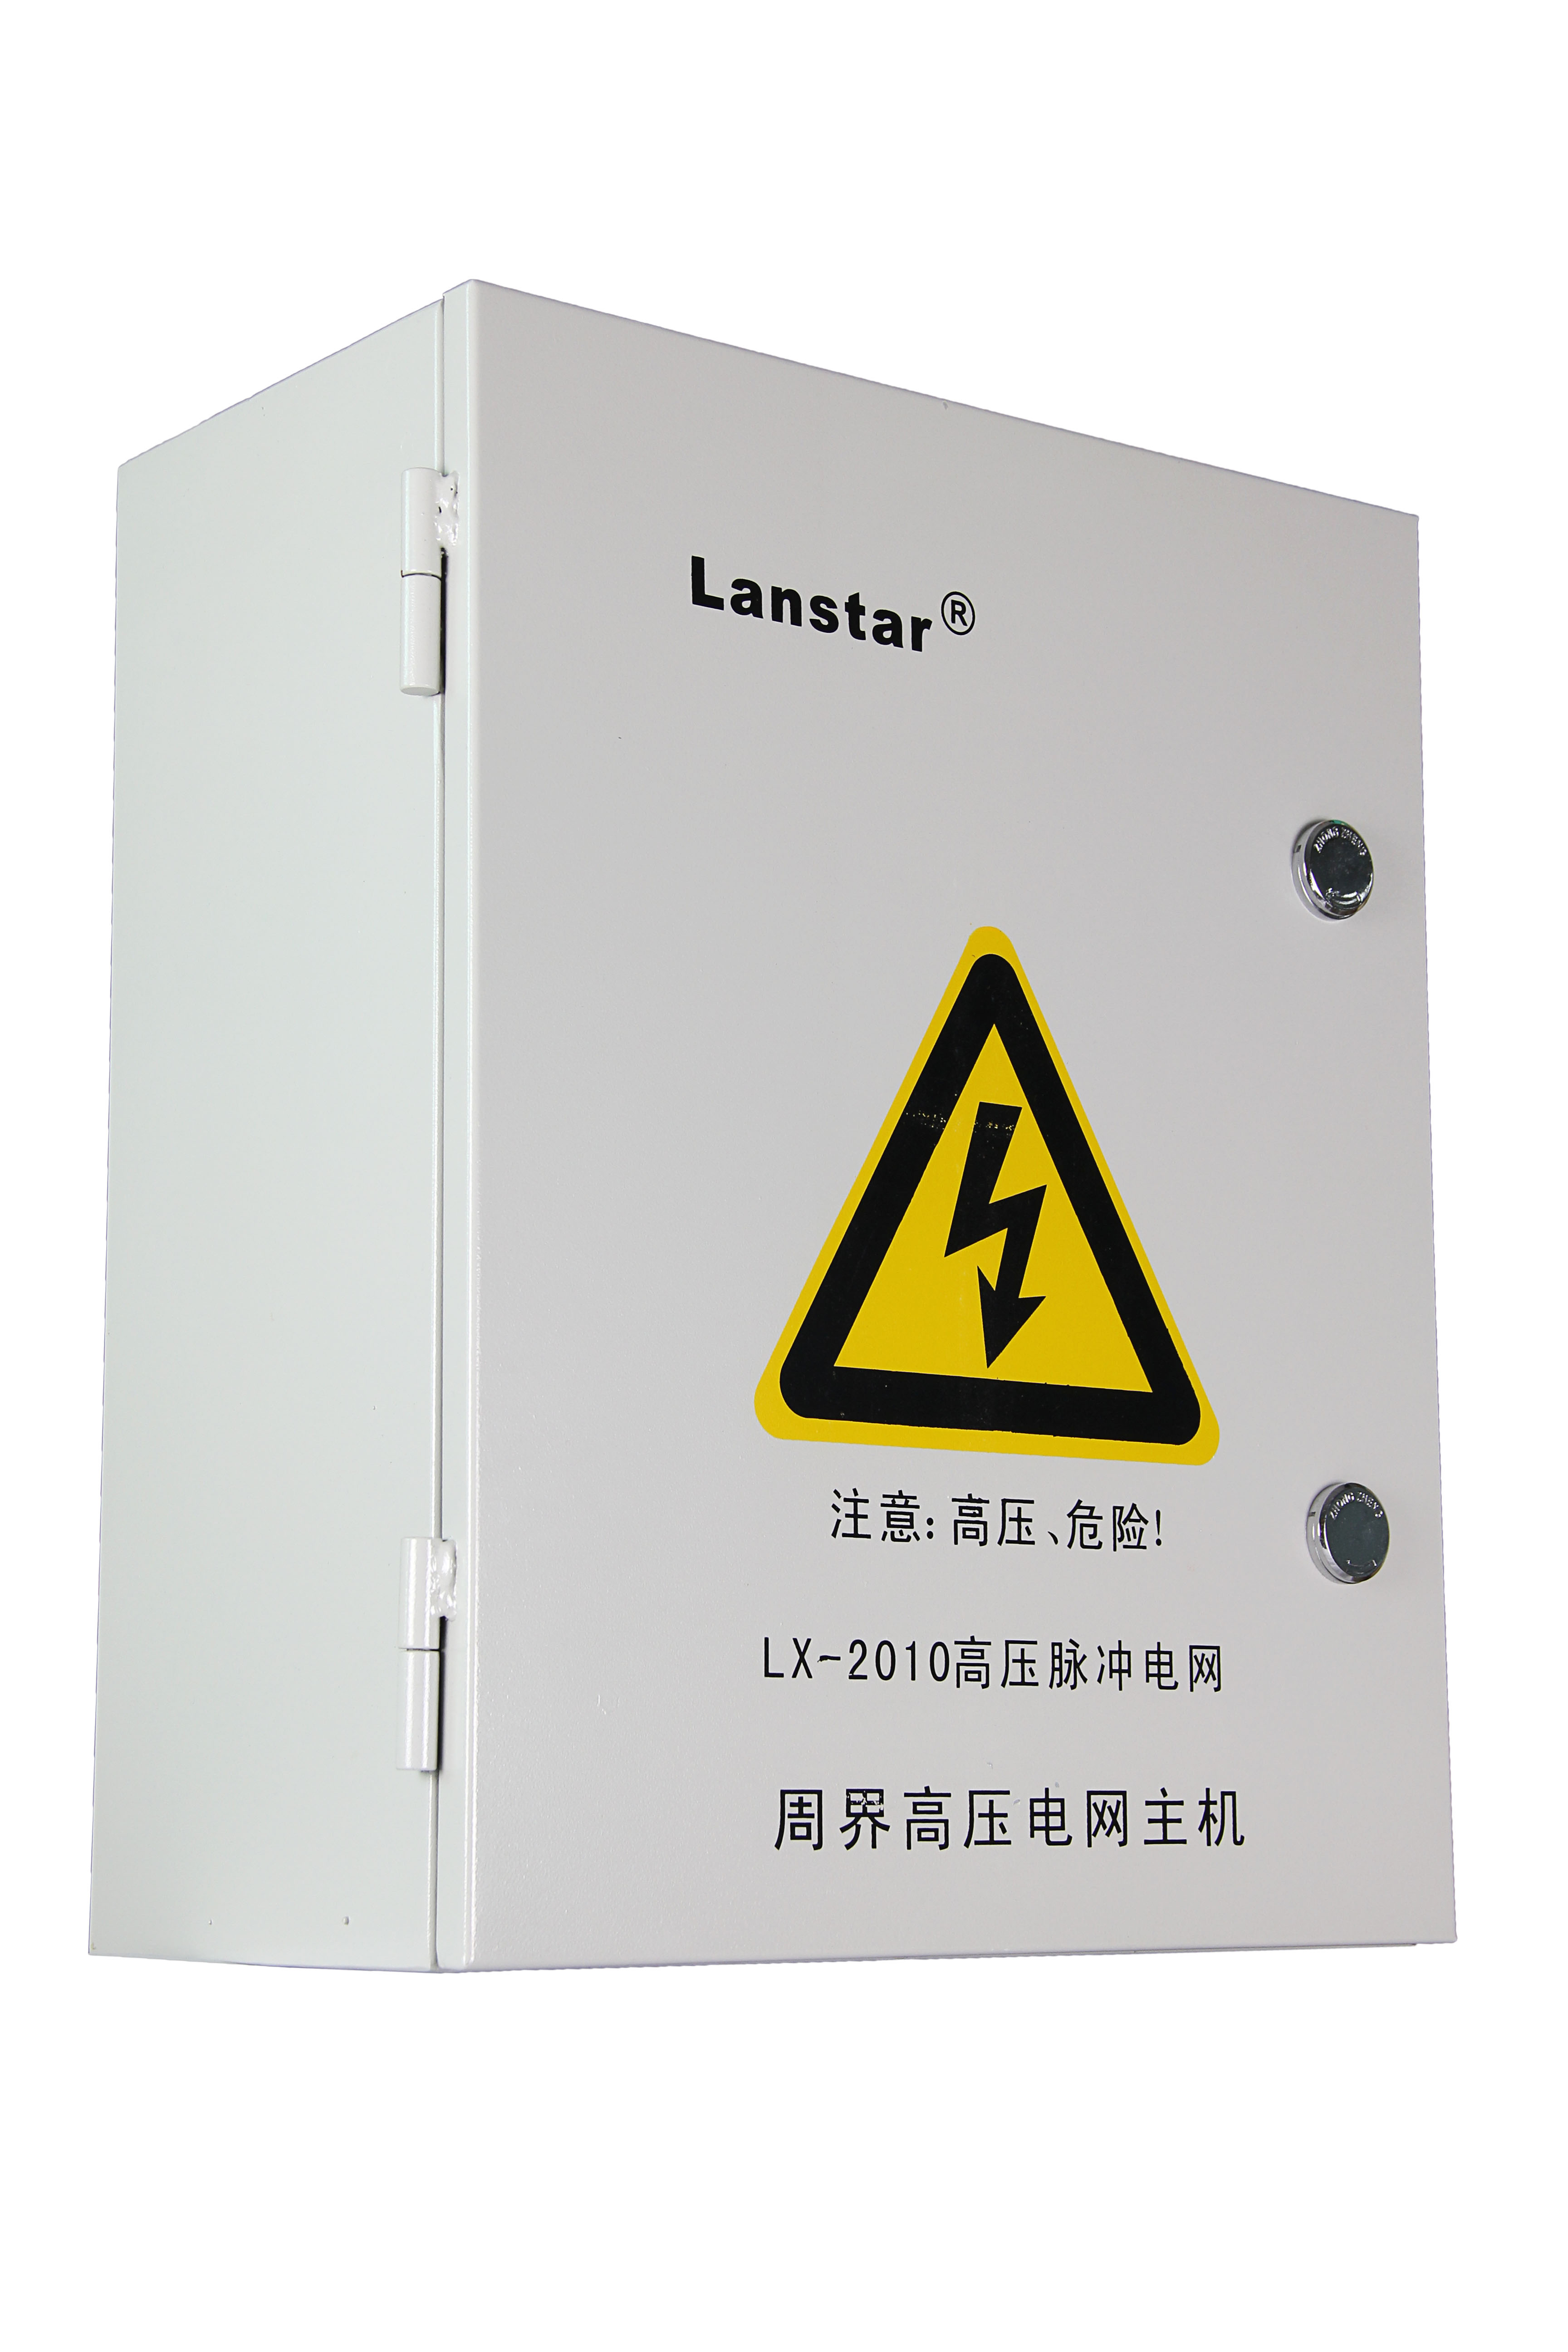 兰星|LX-2010系列高压电网系统厂家|高压脉冲电网主机探测器|看守所等强制性场所周界安防